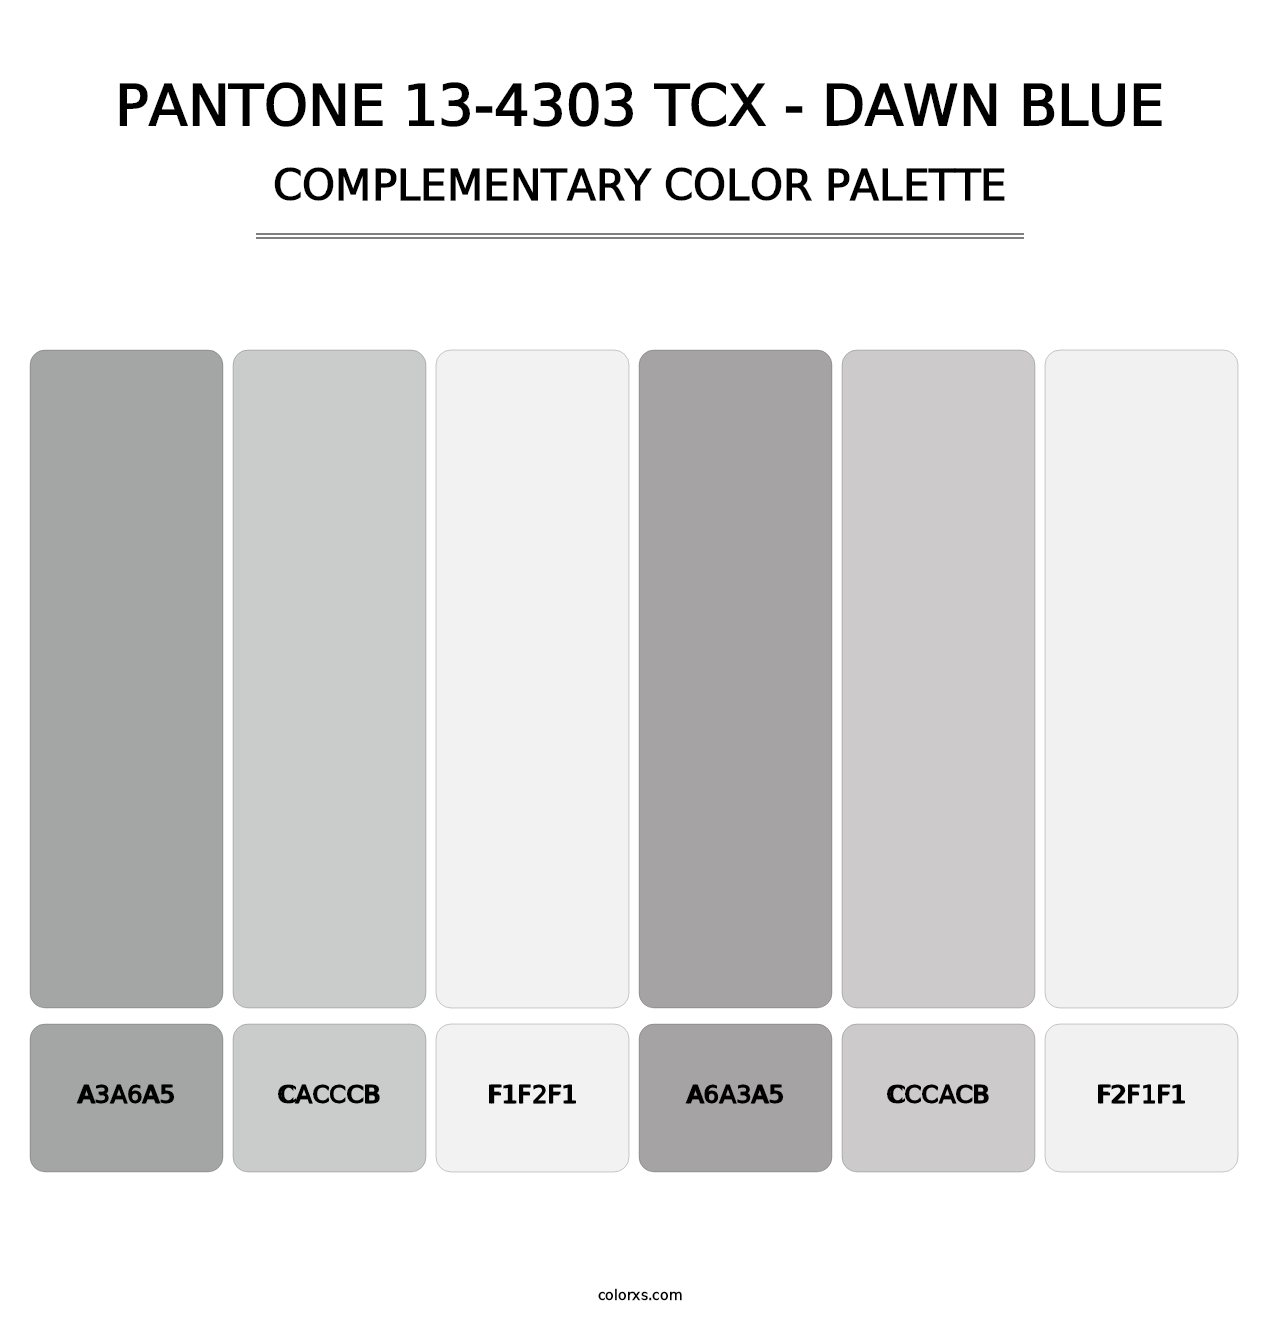 PANTONE 13-4303 TCX - Dawn Blue - Complementary Color Palette